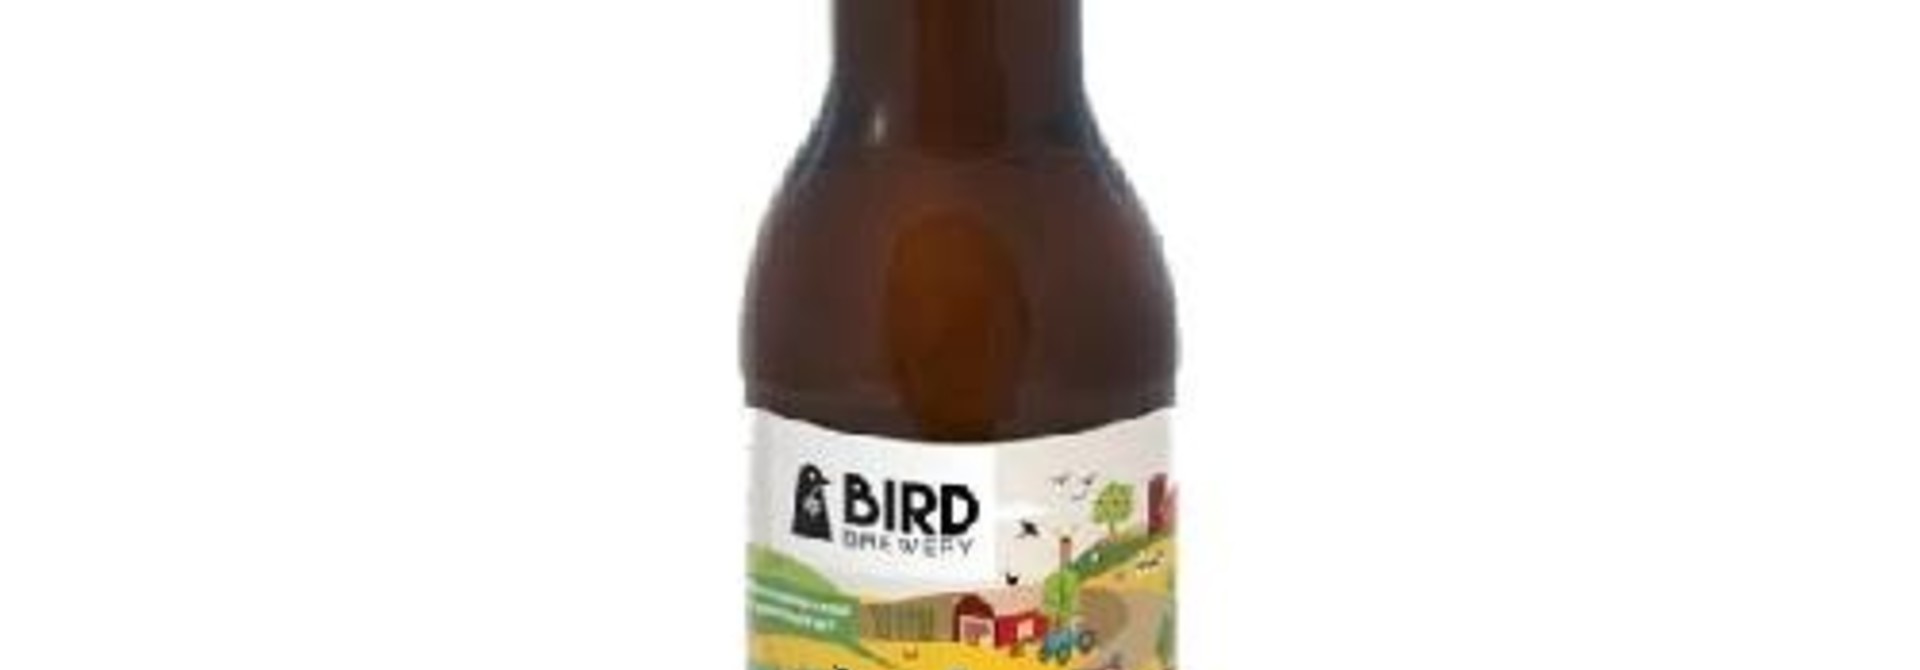 Bird Brewery Datisandere Koekoek 5.6%